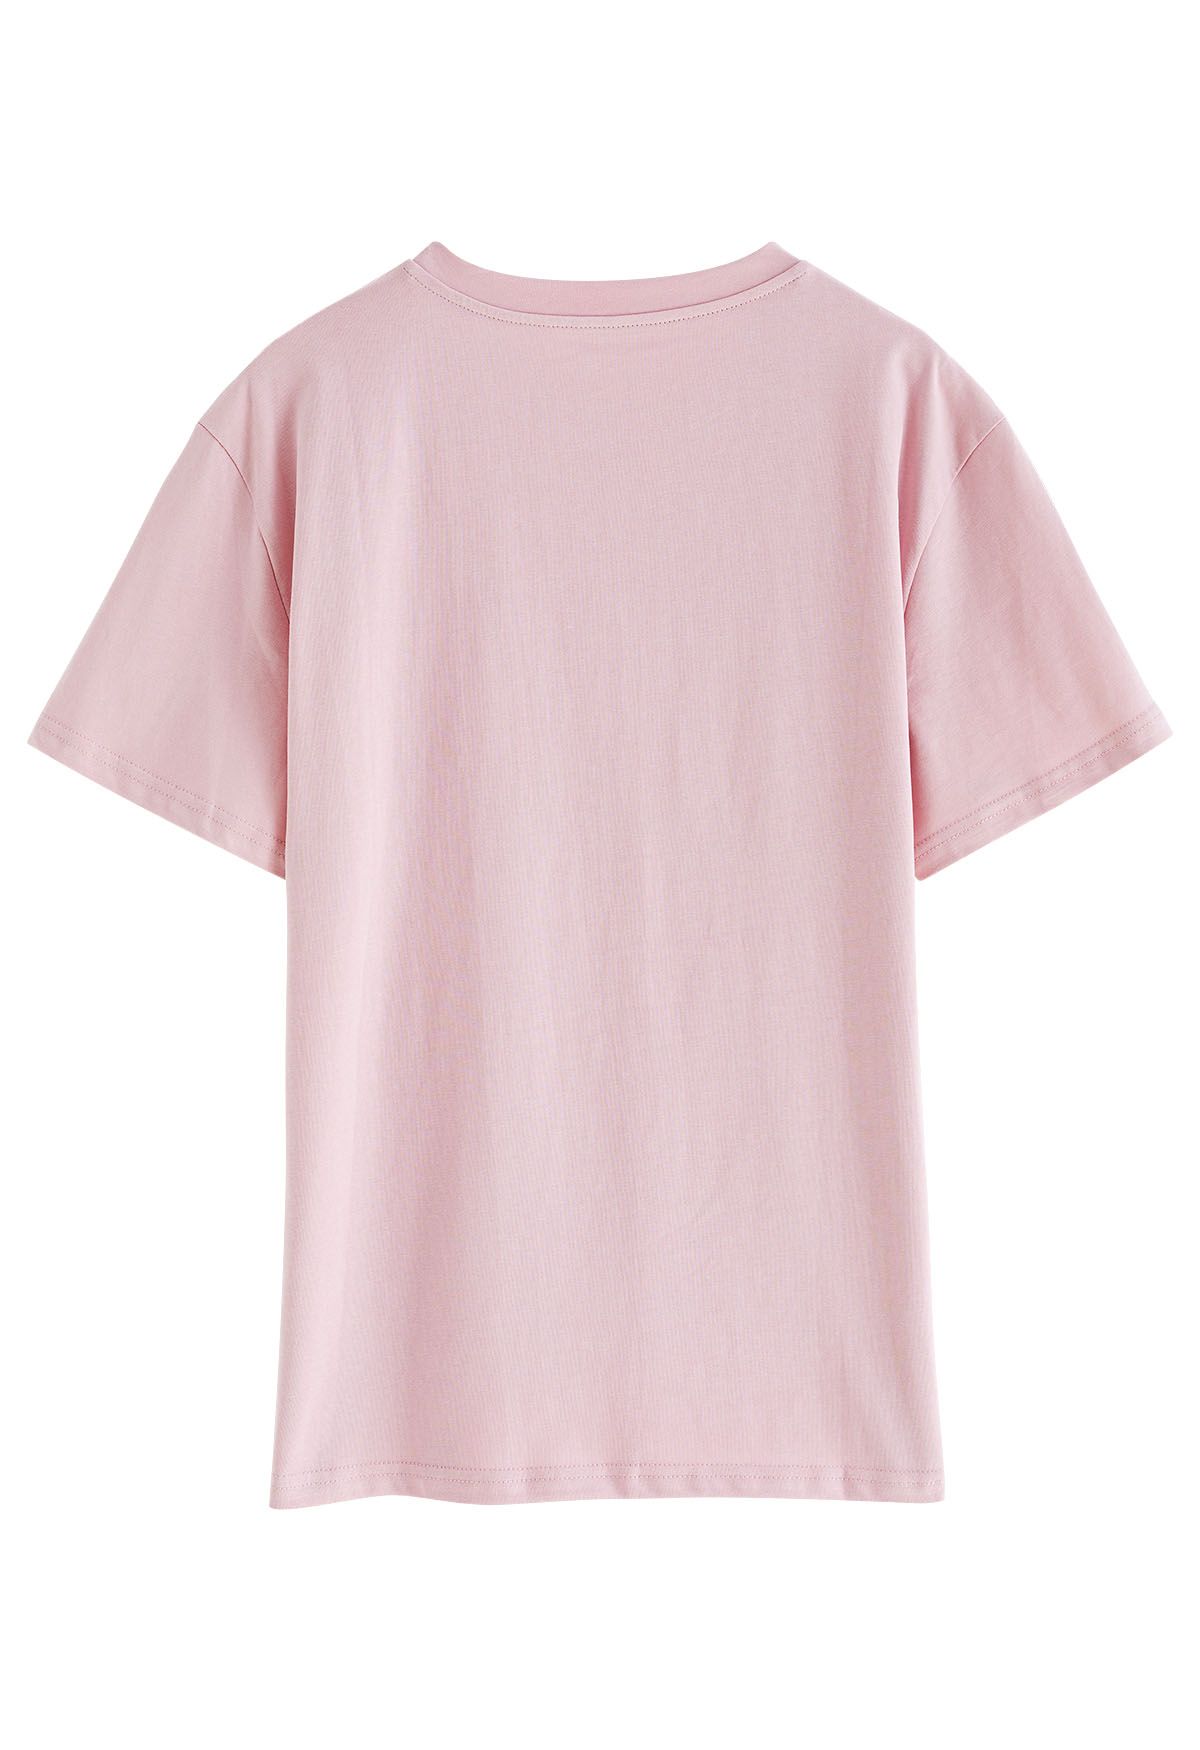 Central Garden Crew Neck T-Shirt in Pink